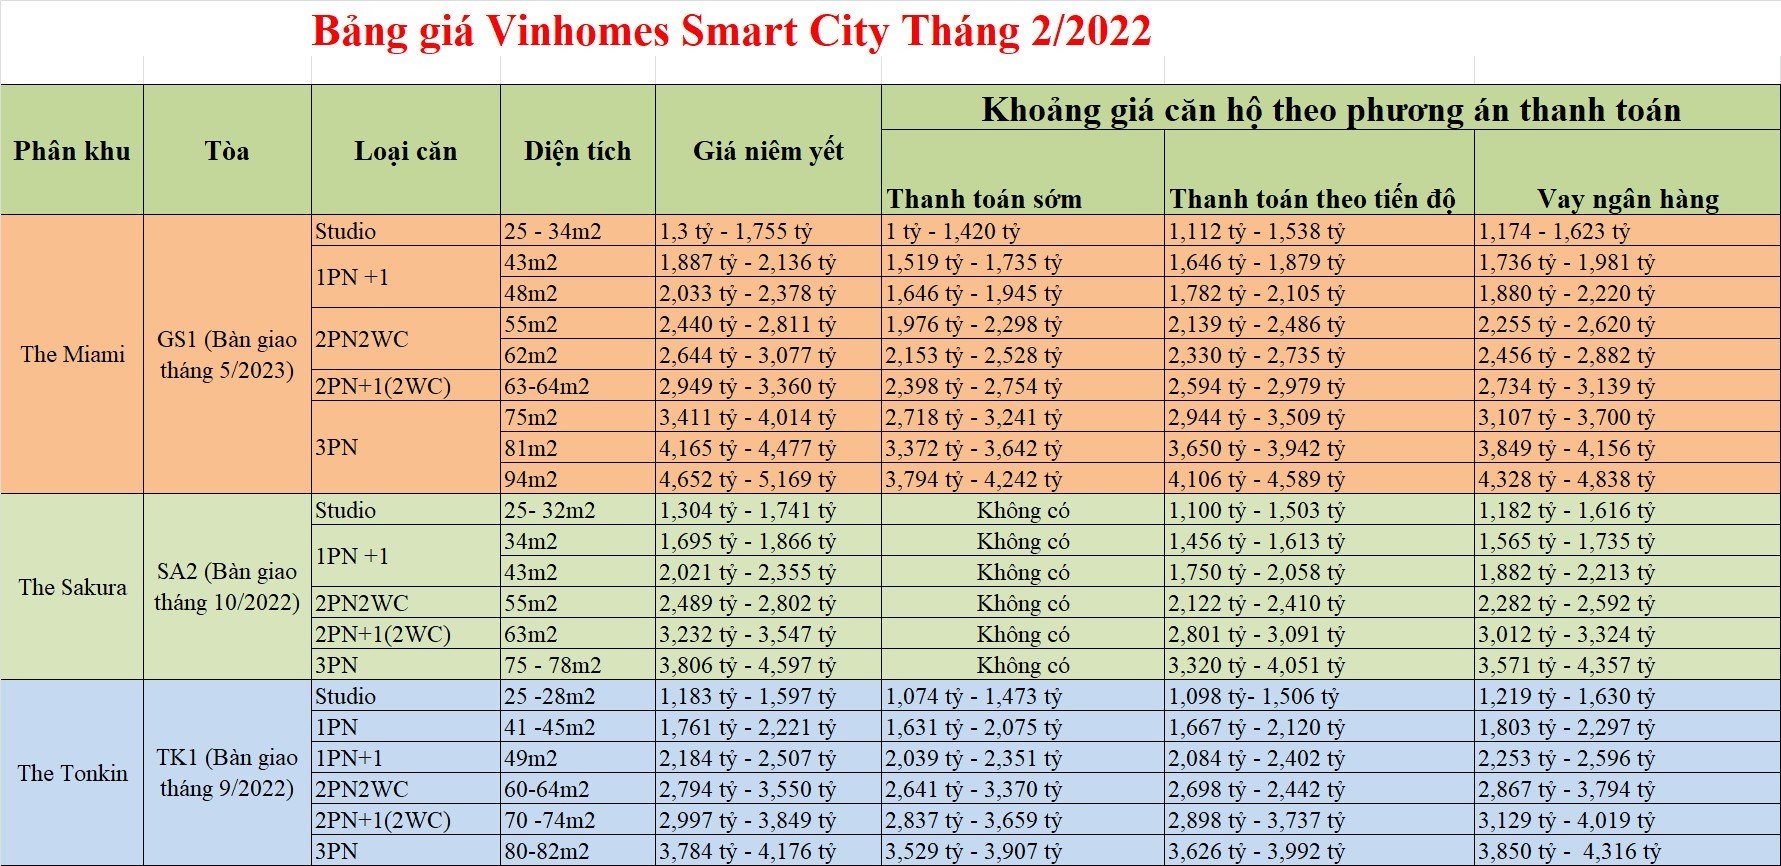 giá vinhomes smart city tháng 2.2022